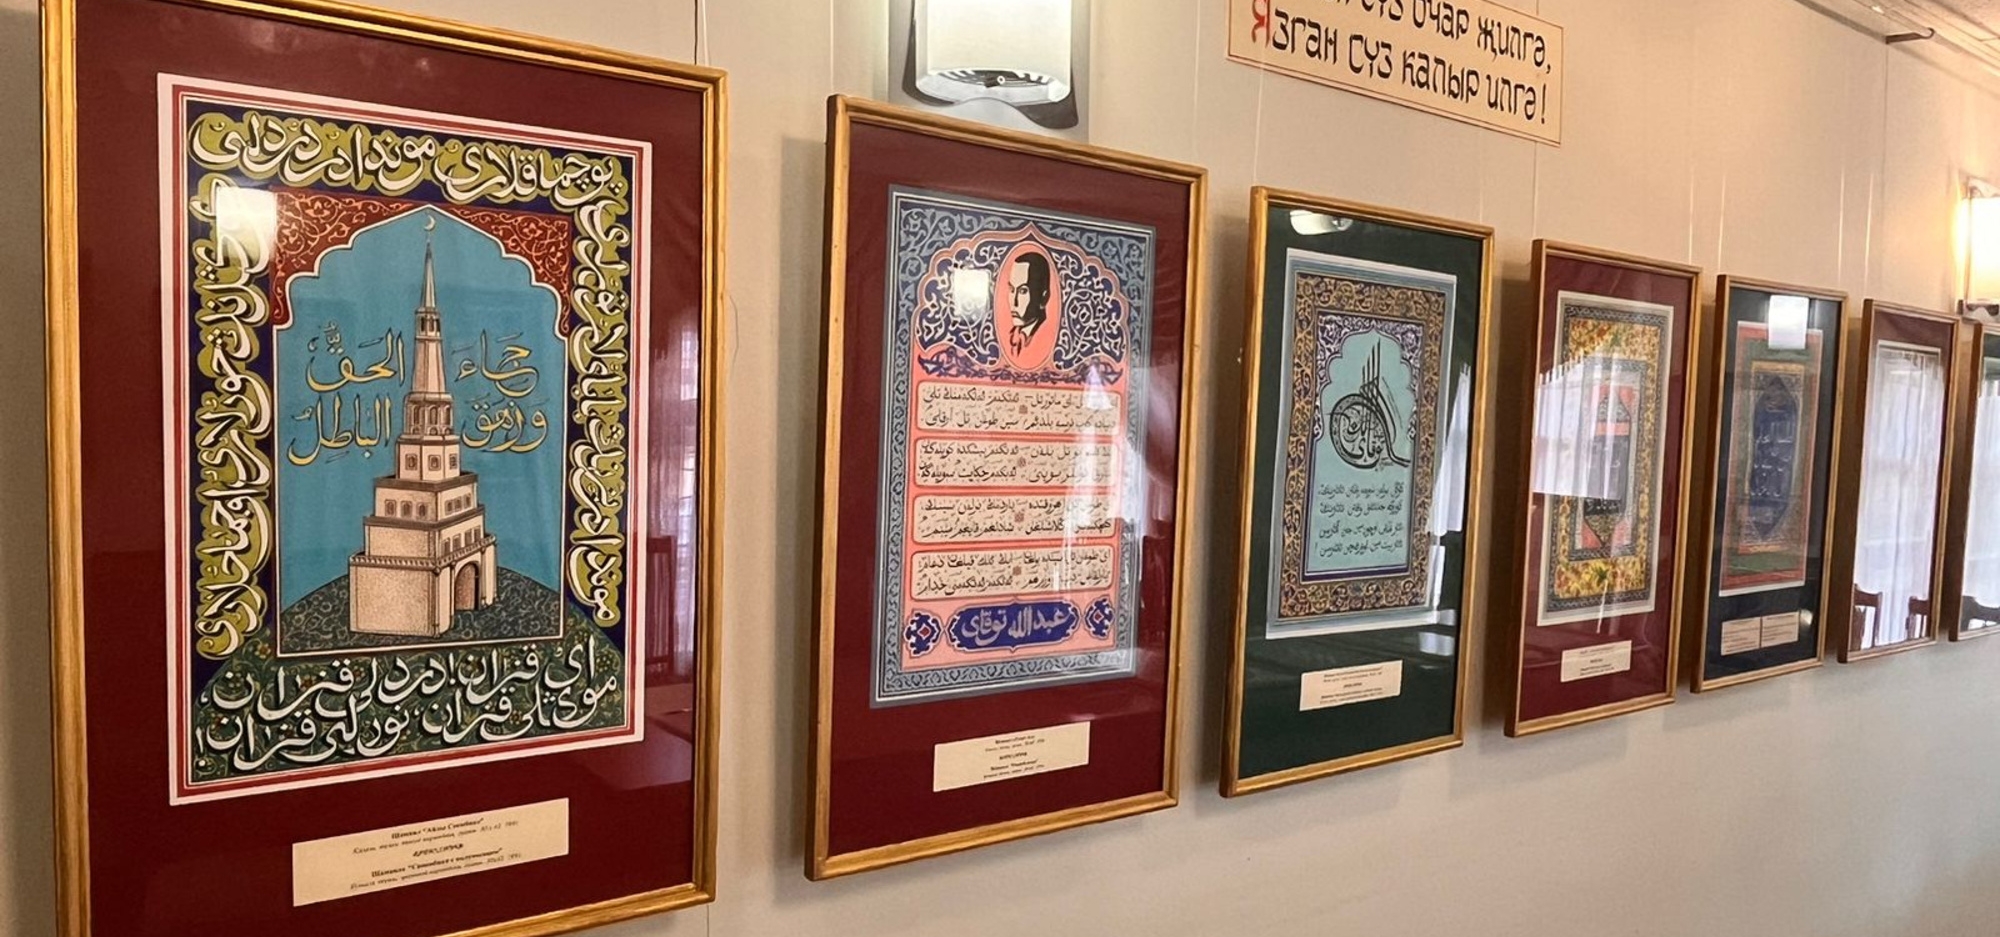 В Музее Каюма Насыри проходит выставка работ художника-каллиграфа Наджипа Наккаша